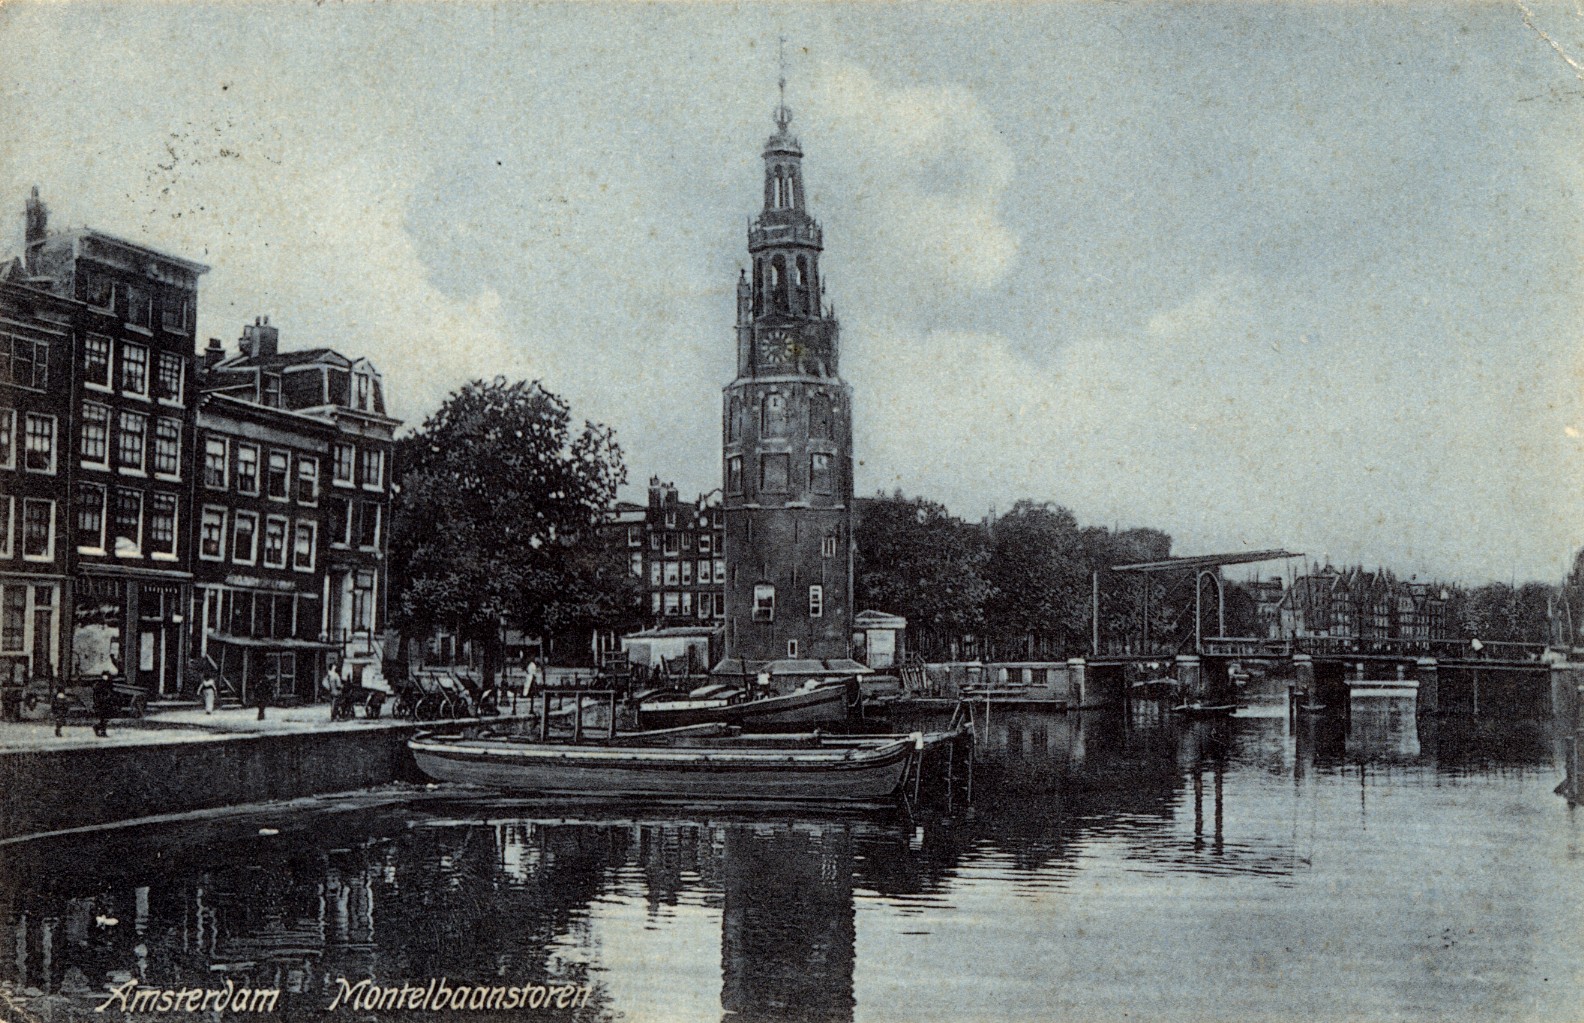 Amsterdam, 1906: Montelbaanstoren